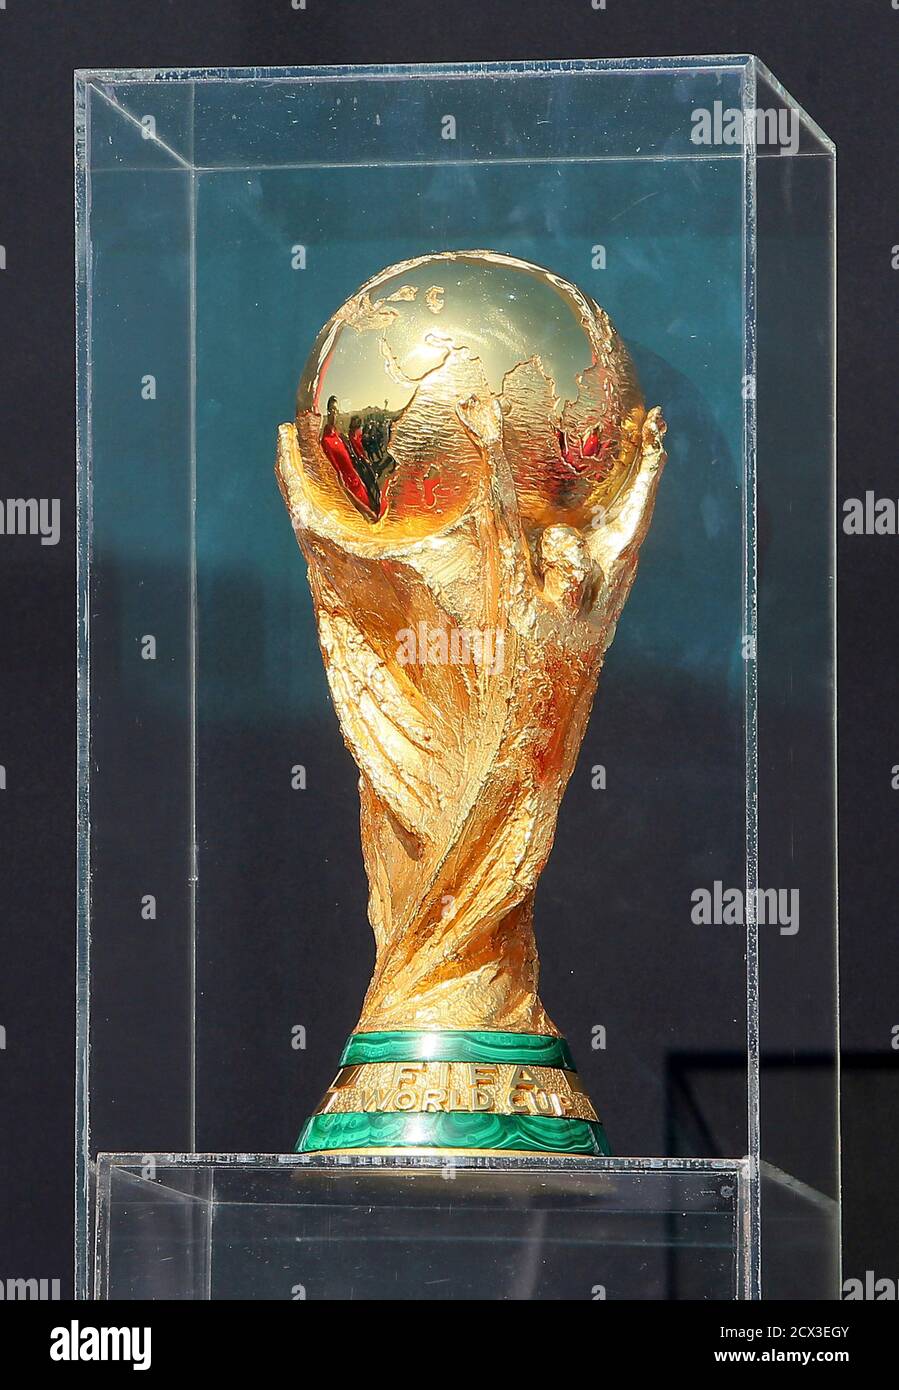 FIFA WM-Pokal sitzt auf dem Display nach seiner Ankunft auf Tour in Doha, 12. Dezember 2013.  REUTERS/Fadi Al-Assaad (QATAR - Tags: SPORT-Fußball-WM) Stockfoto